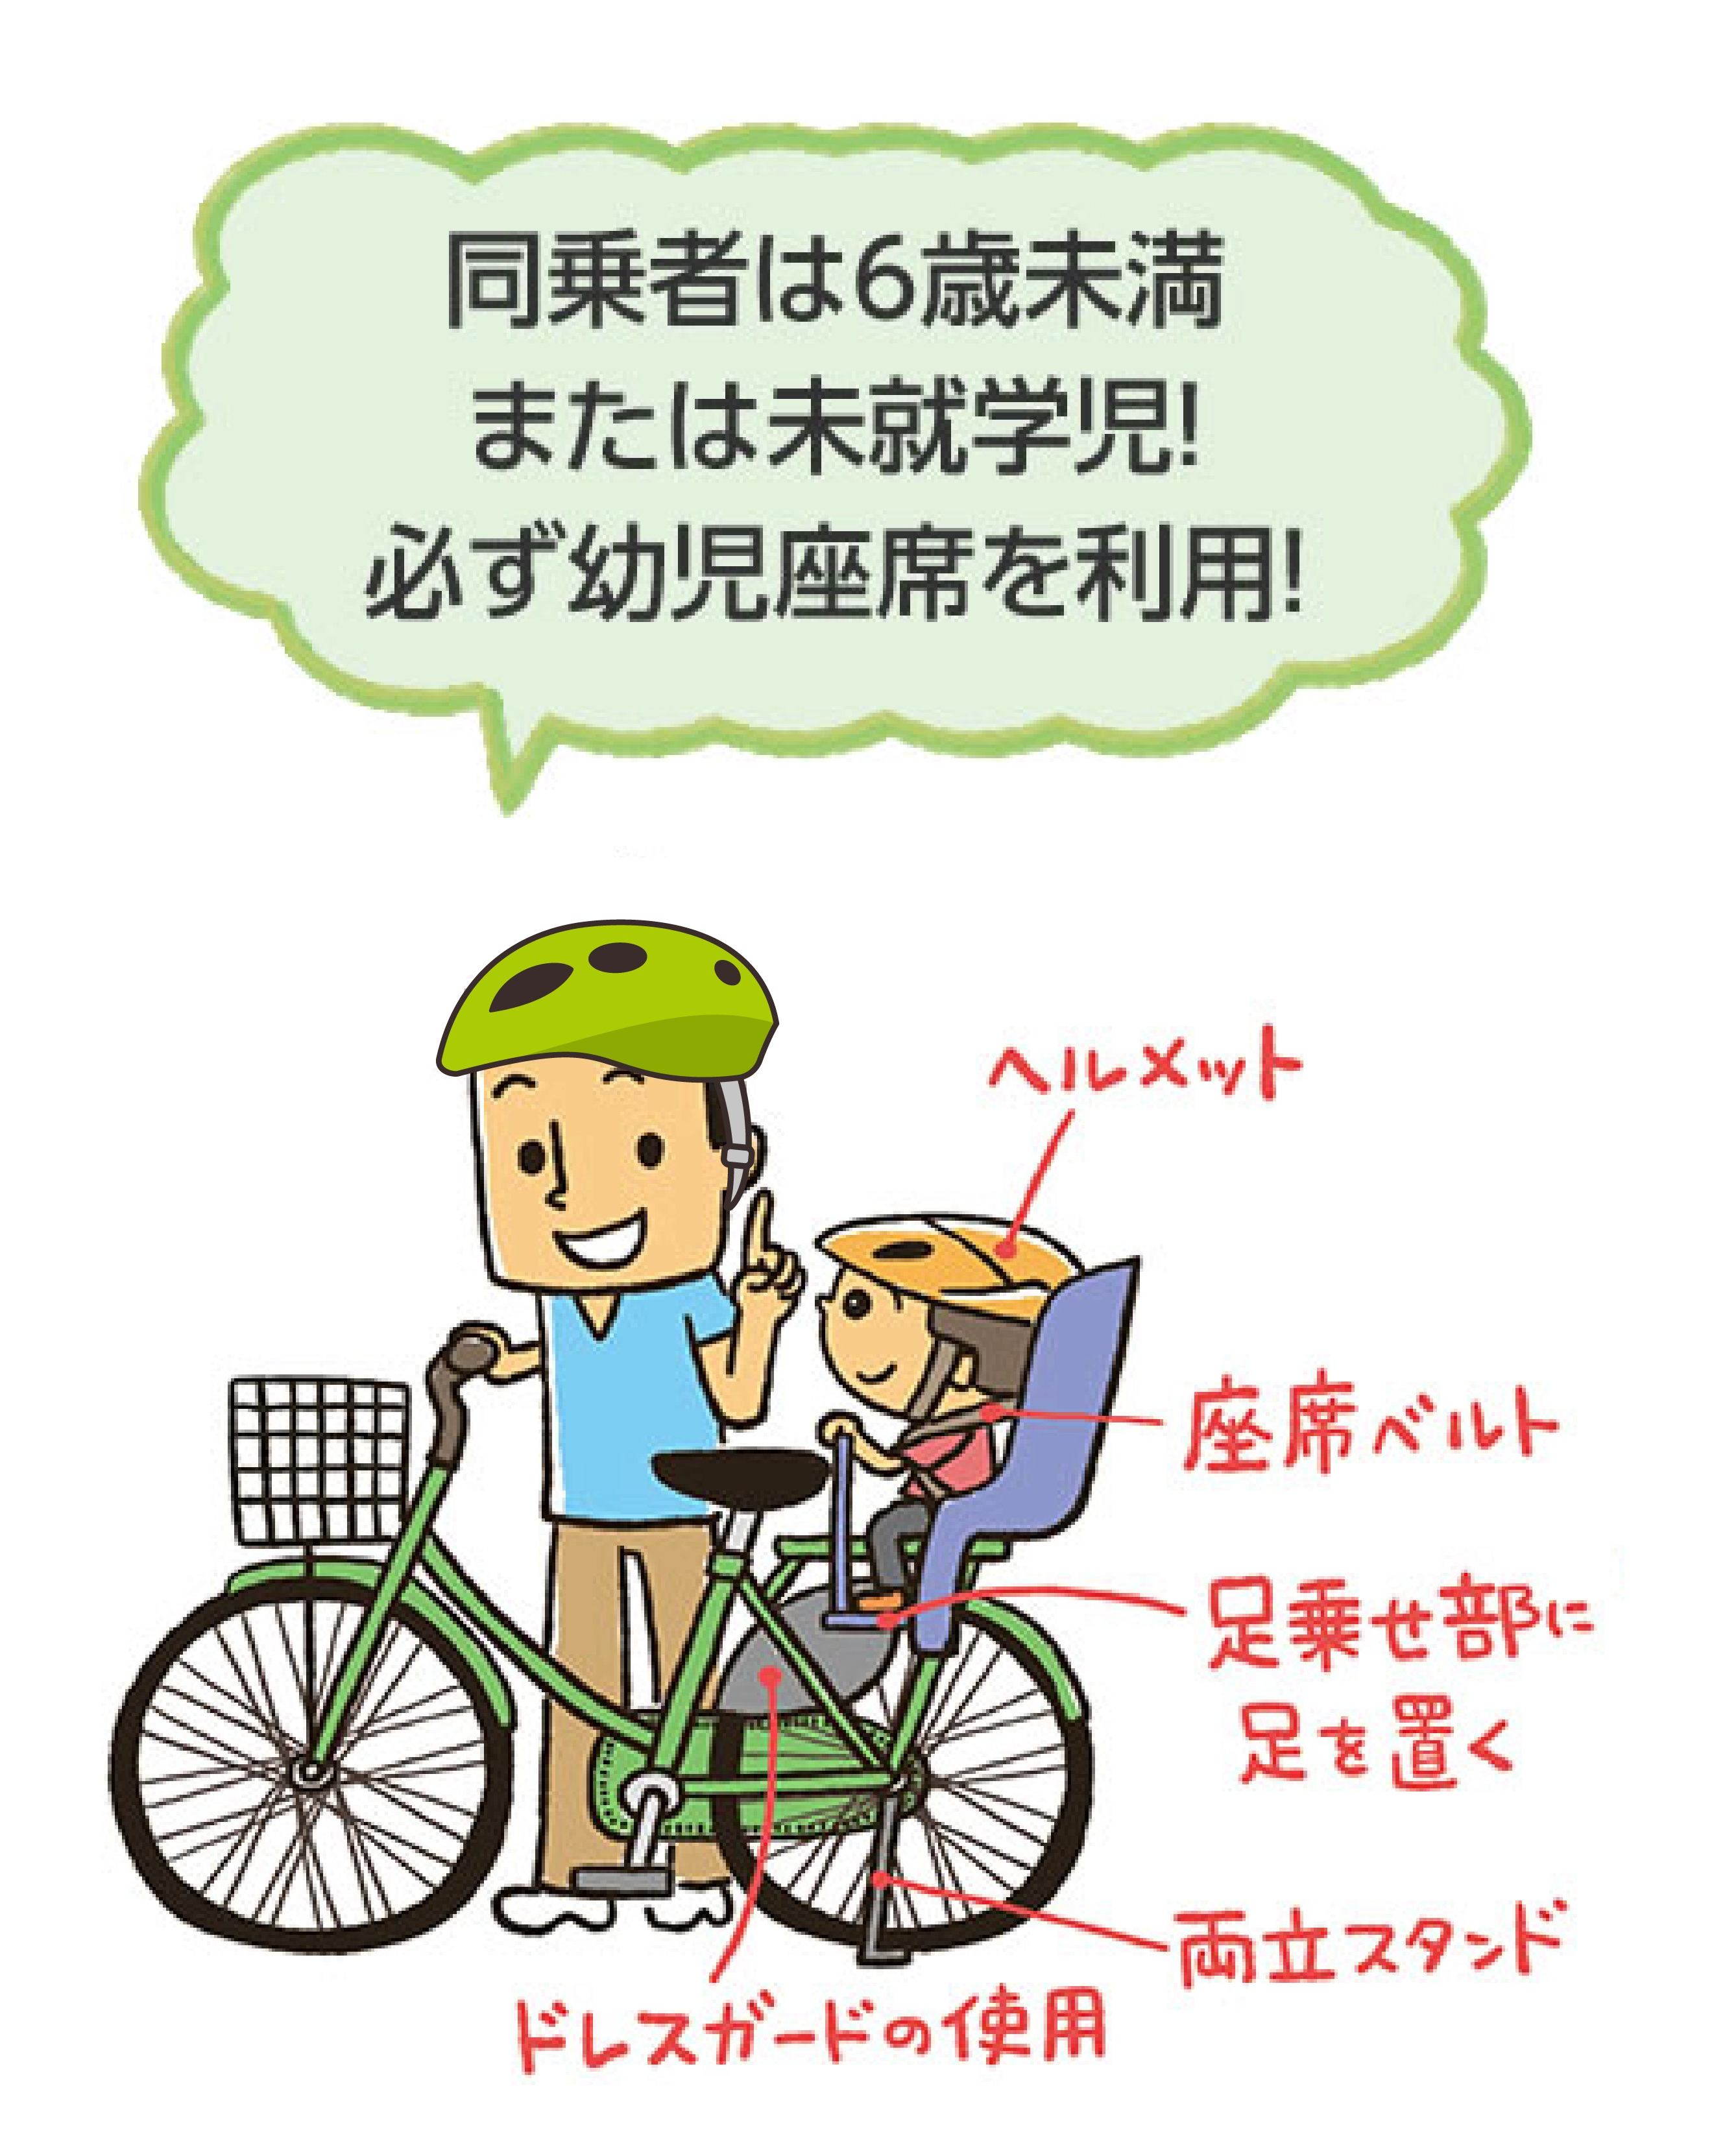 同乗者は6歳未満または未就学児。必ず幼児座席を利用。ヘルメットをかぶる、幼児座席は座席ベルトを着用、足乗せ部に足を置く、自転車にドレスガードを使用する、スタンドは両立スタンドを使用する。